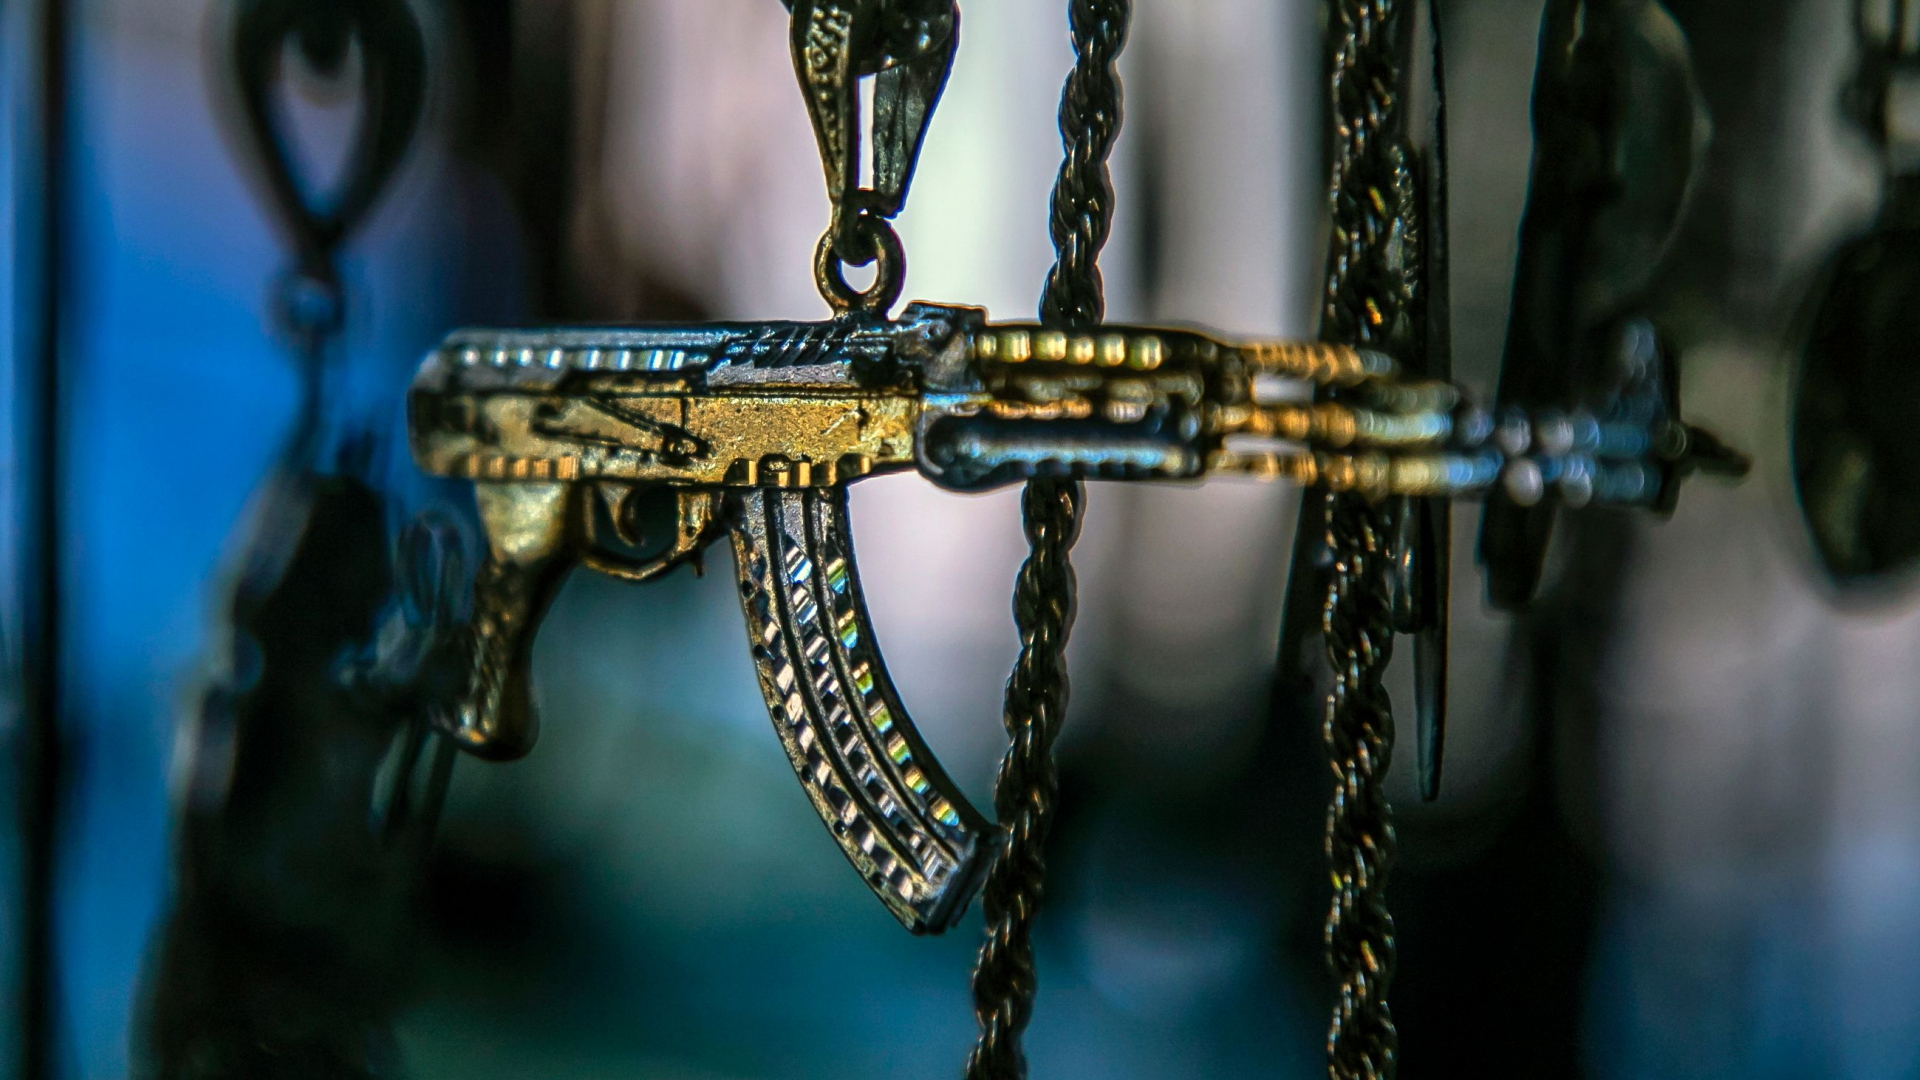 Kettenanhänger in Form des Maschinengewehrs AK-47 | AFP